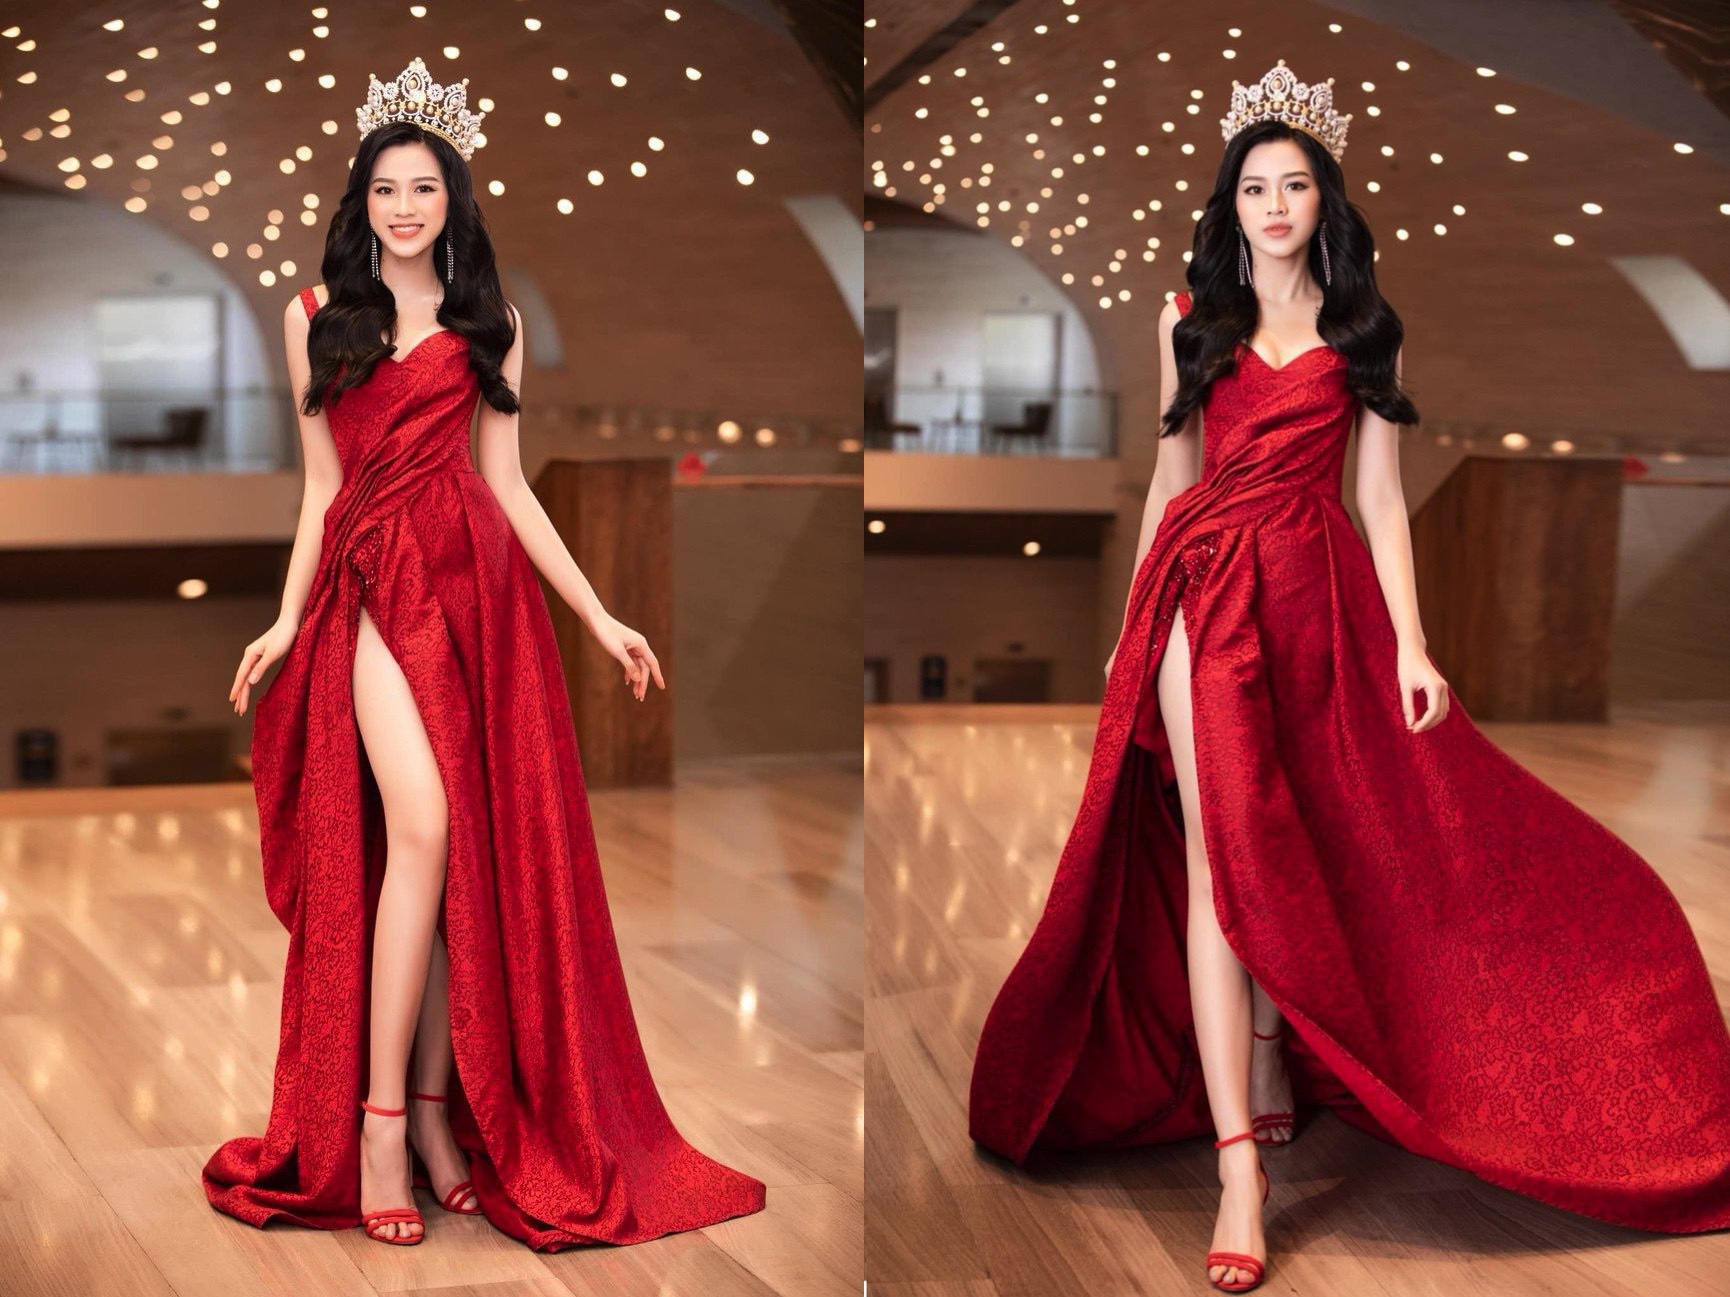 Với thiết kế váy đỏ bồng bềnh cùng chiếc vương miện quyền lực, Hoa hậu Đỗ Thị Hà khiến bao người ngỡ ngàng với vẻ đẹp tựa nữ thần